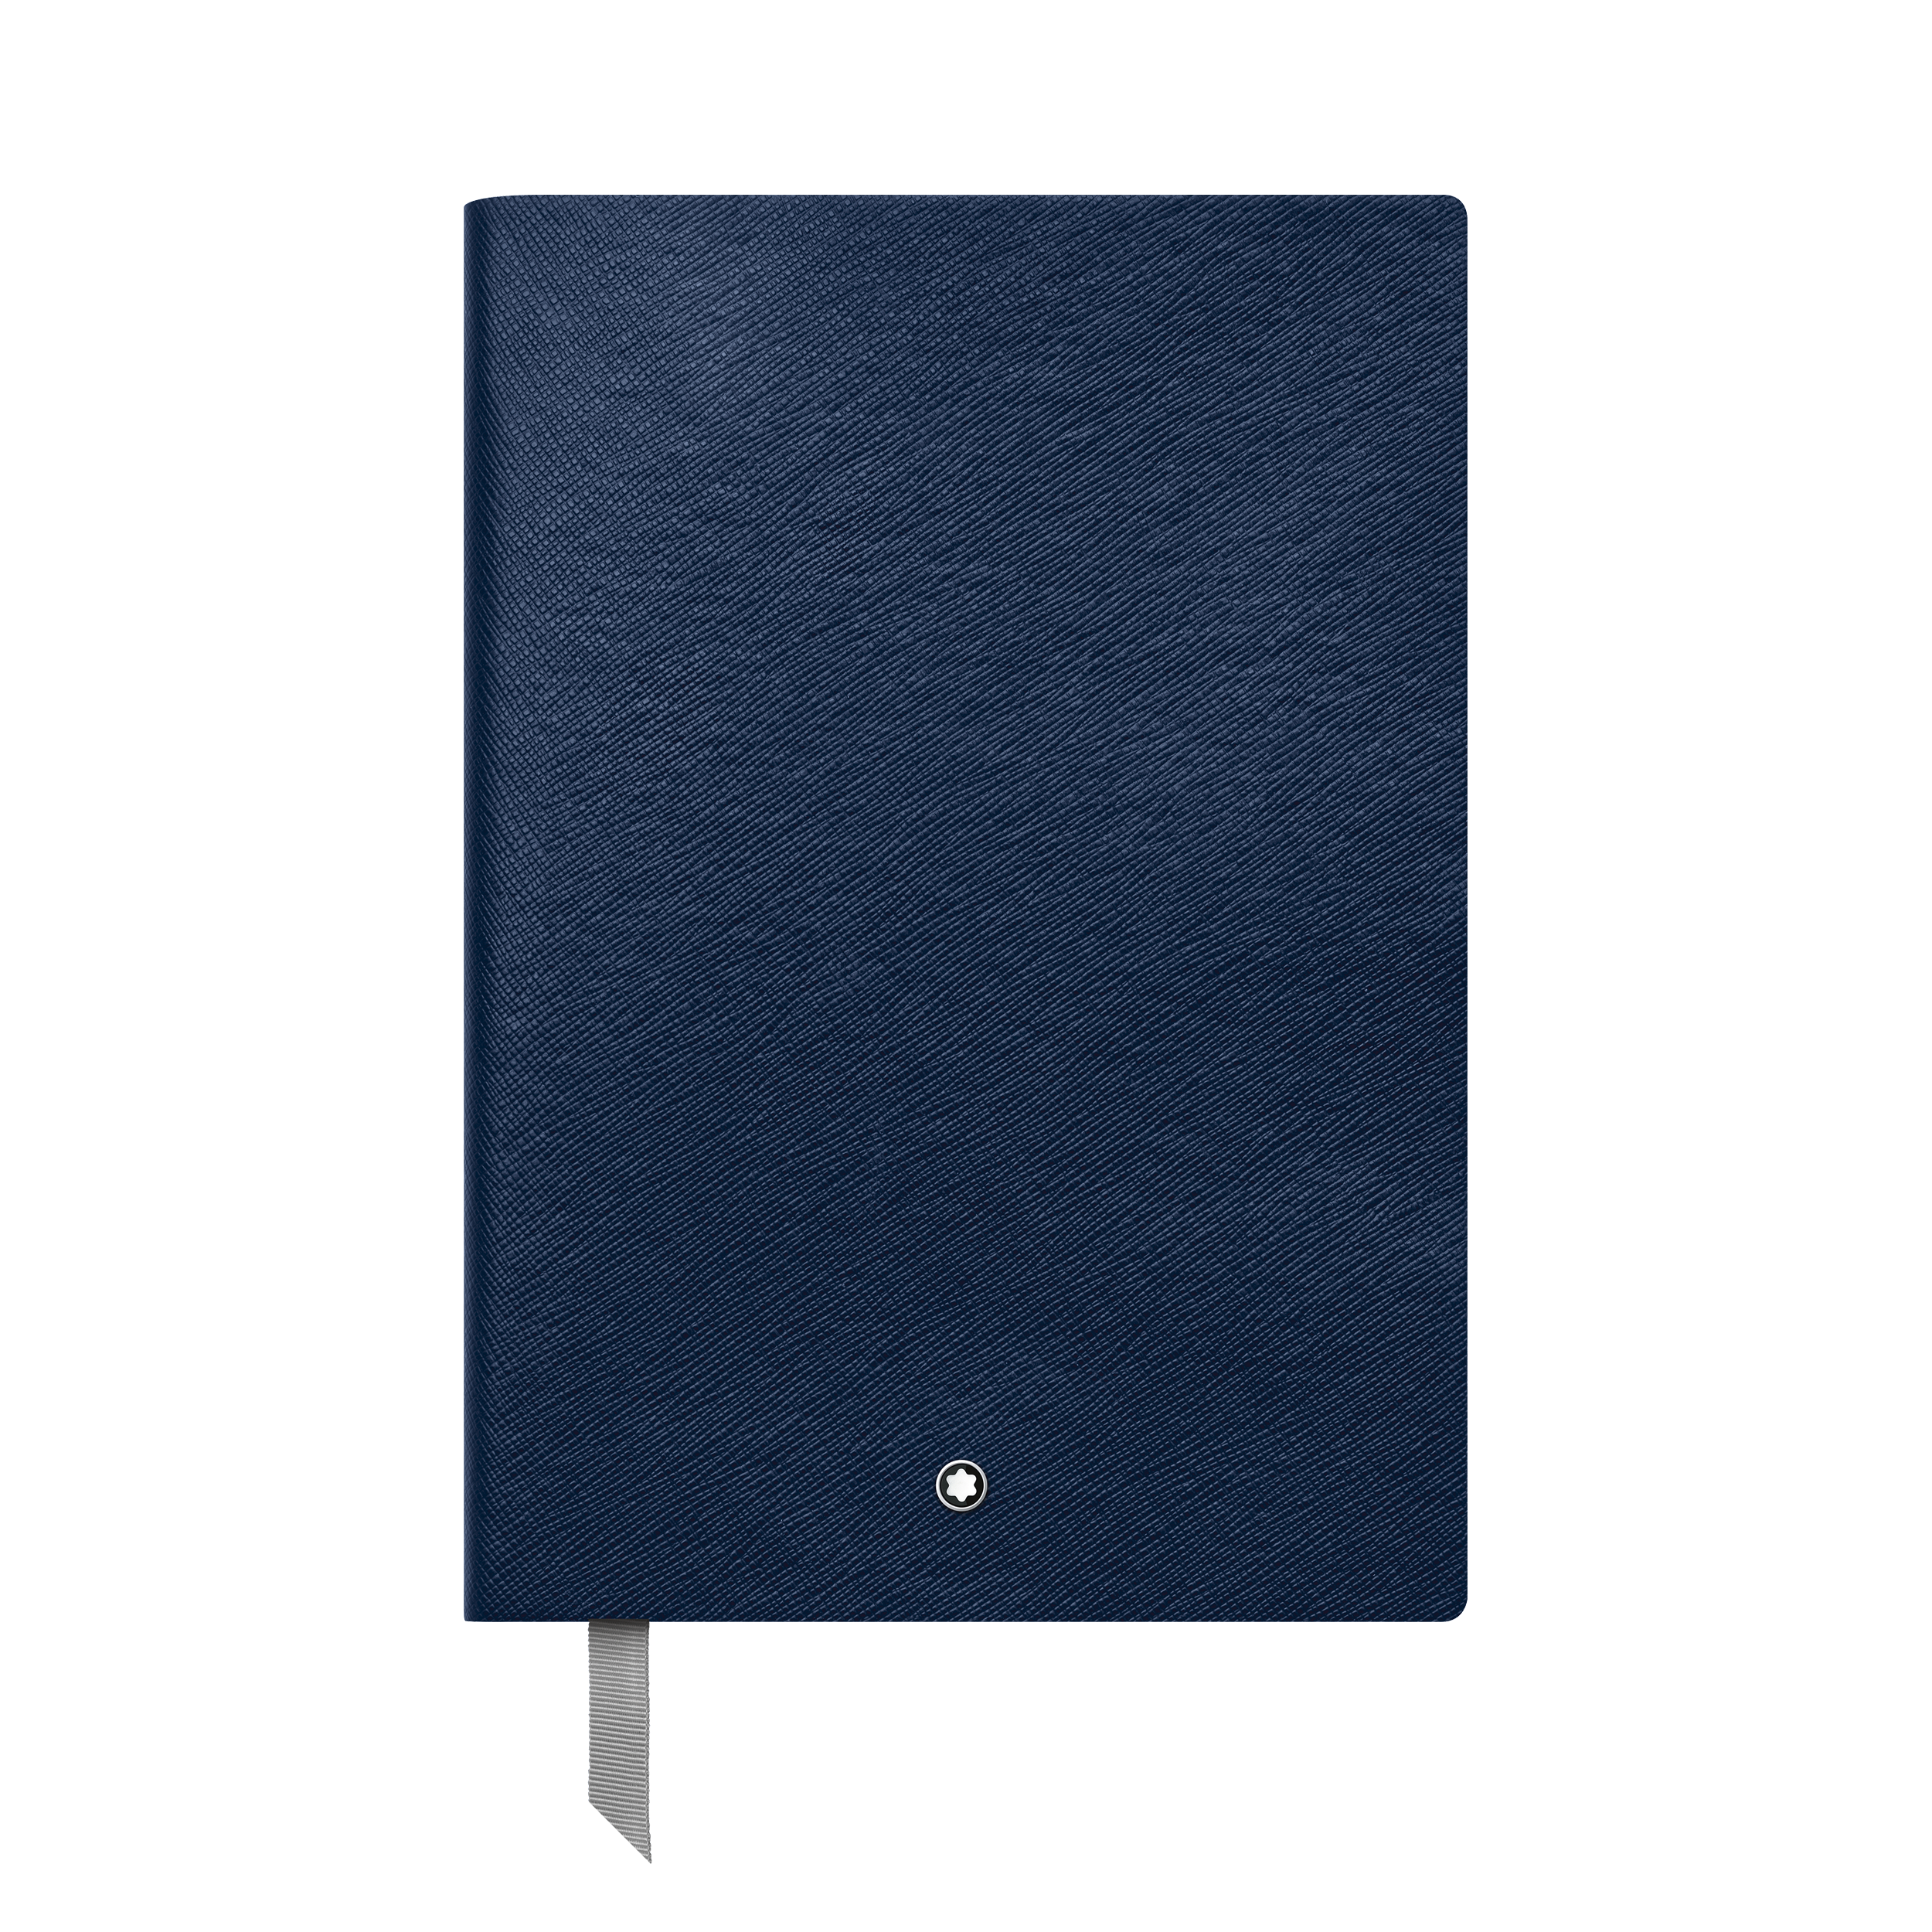 Montblanc Fine Stationery Notebook #146 Indigo, blank, image 1